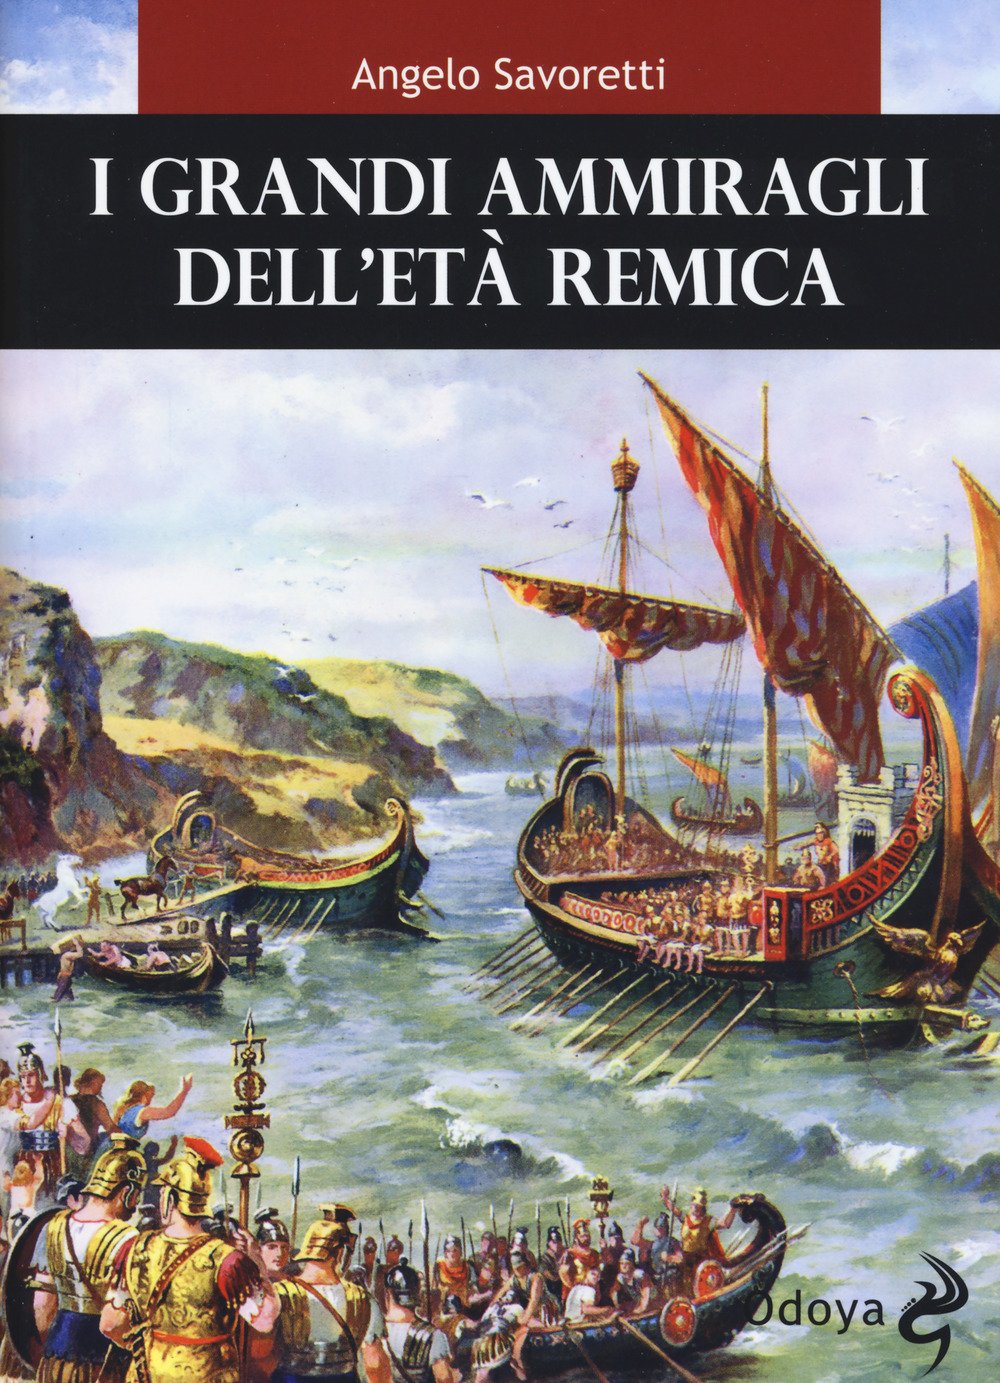 Libri Angelo Savoretti - I Grandi Ammiragli Dell'Eta Remica NUOVO SIGILLATO, EDIZIONE DEL 28/09/2017 SUBITO DISPONIBILE